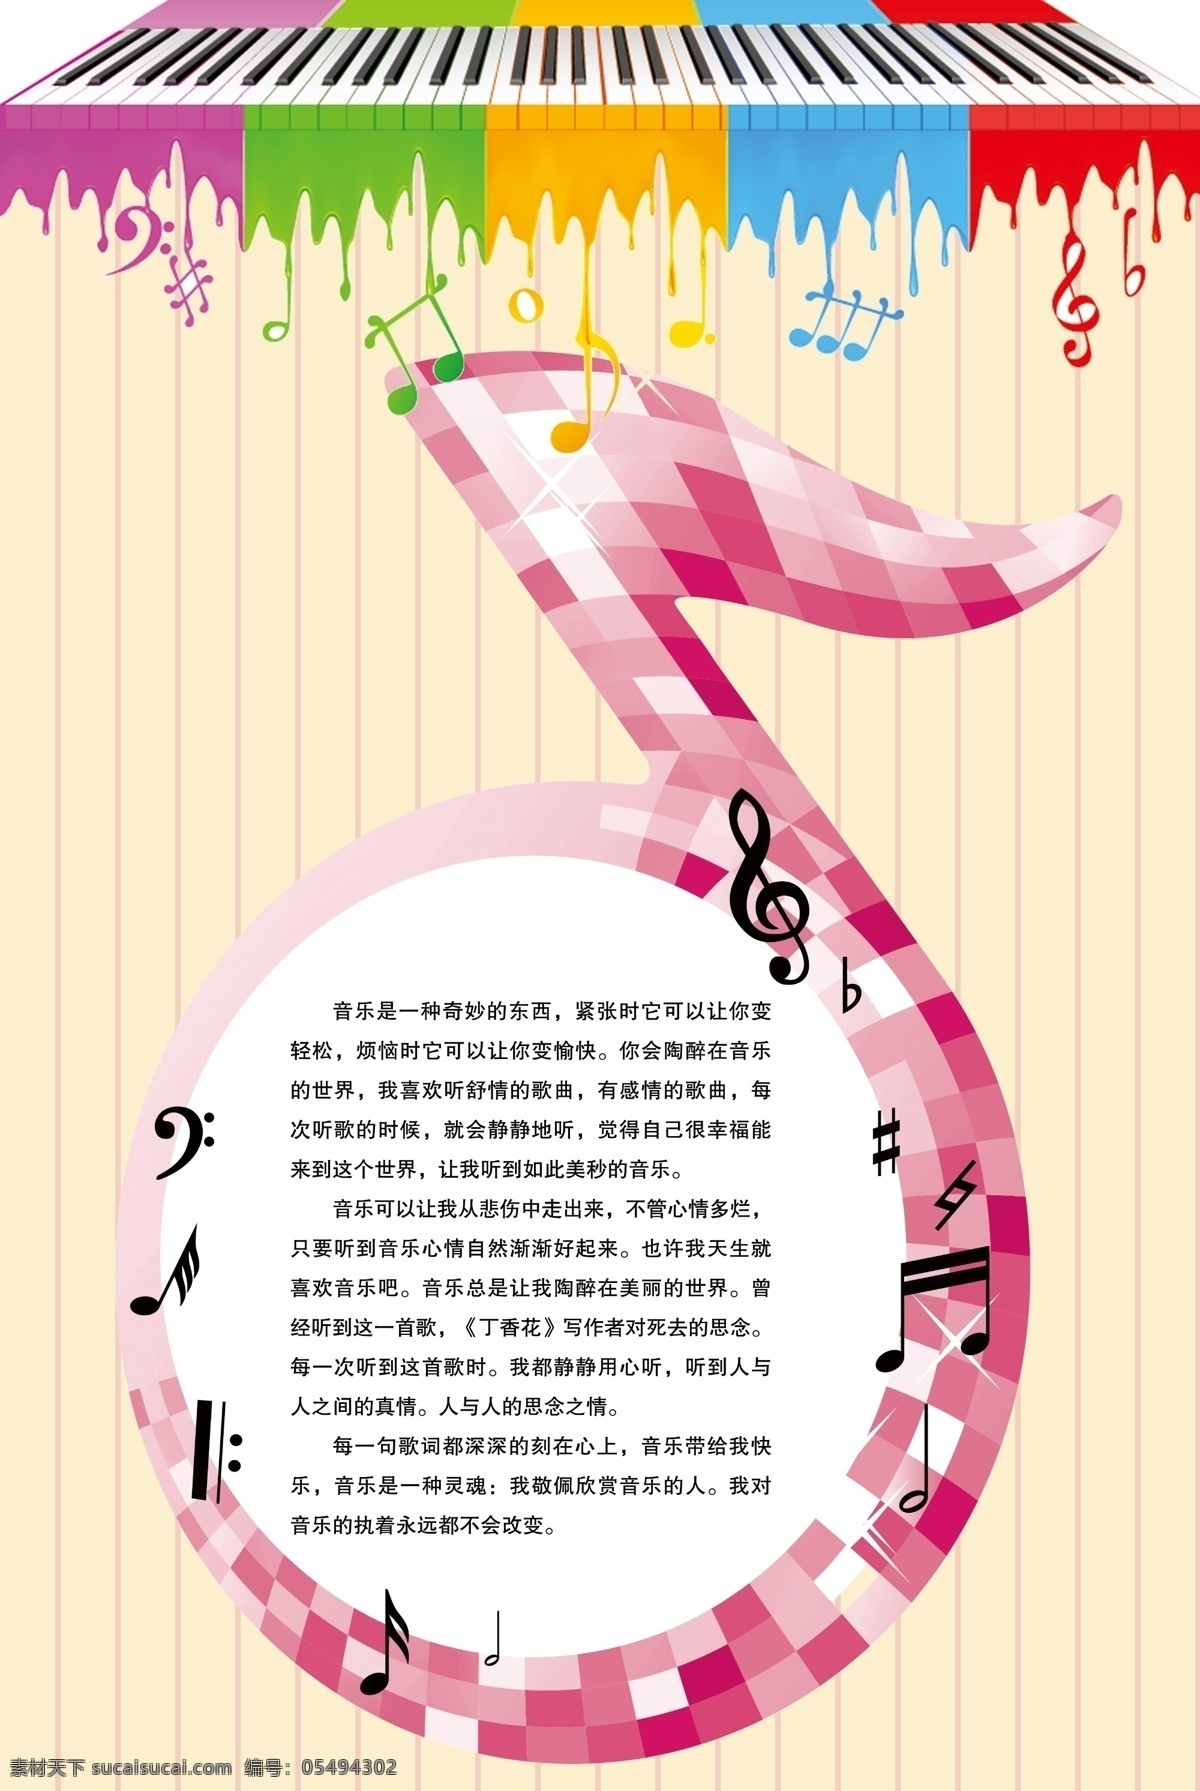 音乐教室挂图 校园 学校 音乐 音符 钢琴 宣传 海报 校园系列 白色